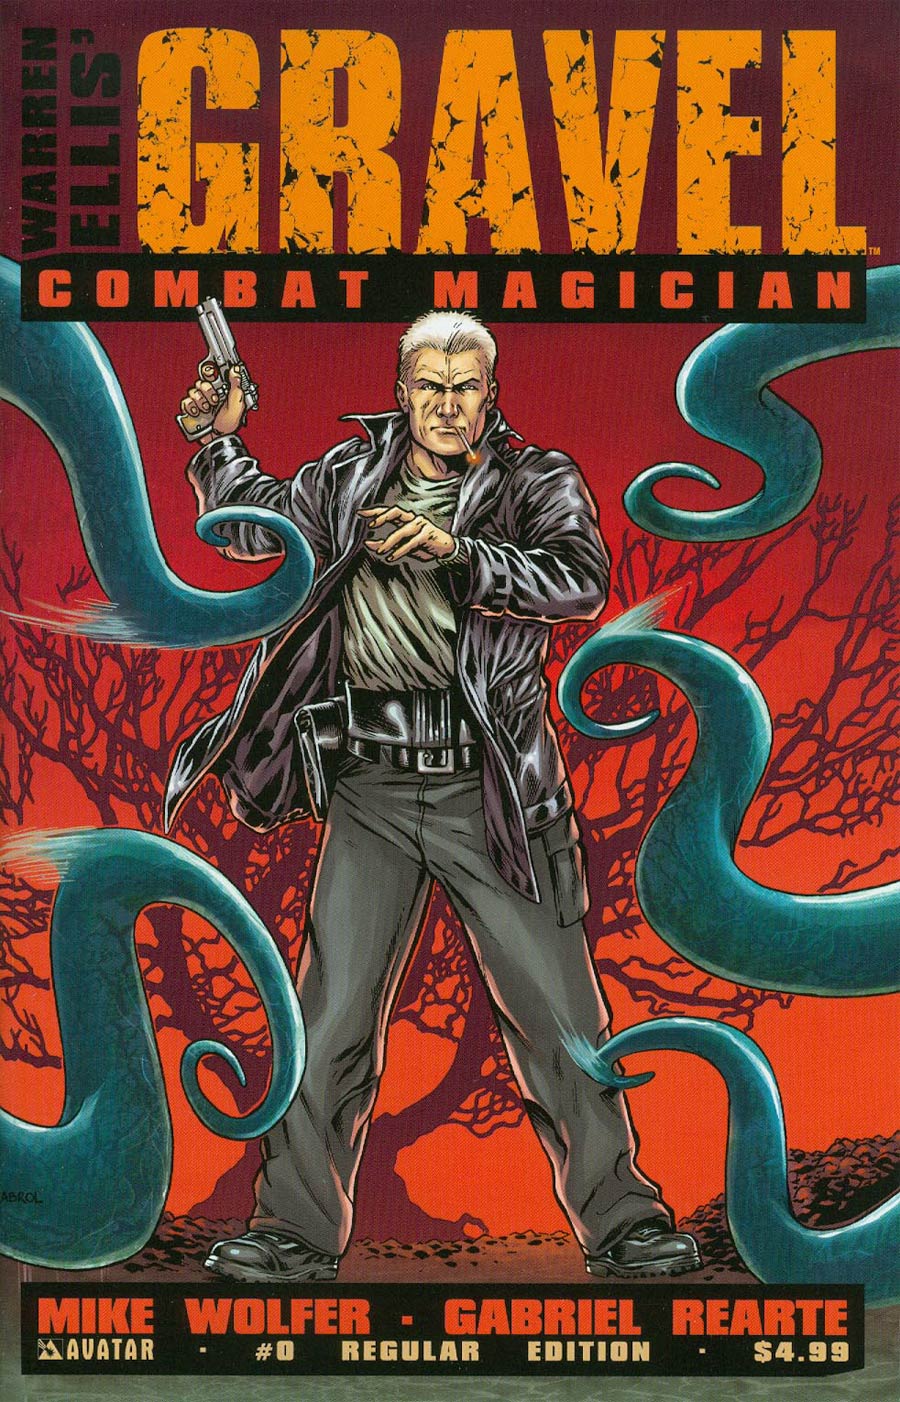 Gravel Combat Magician #0 Cover A Regular Cover